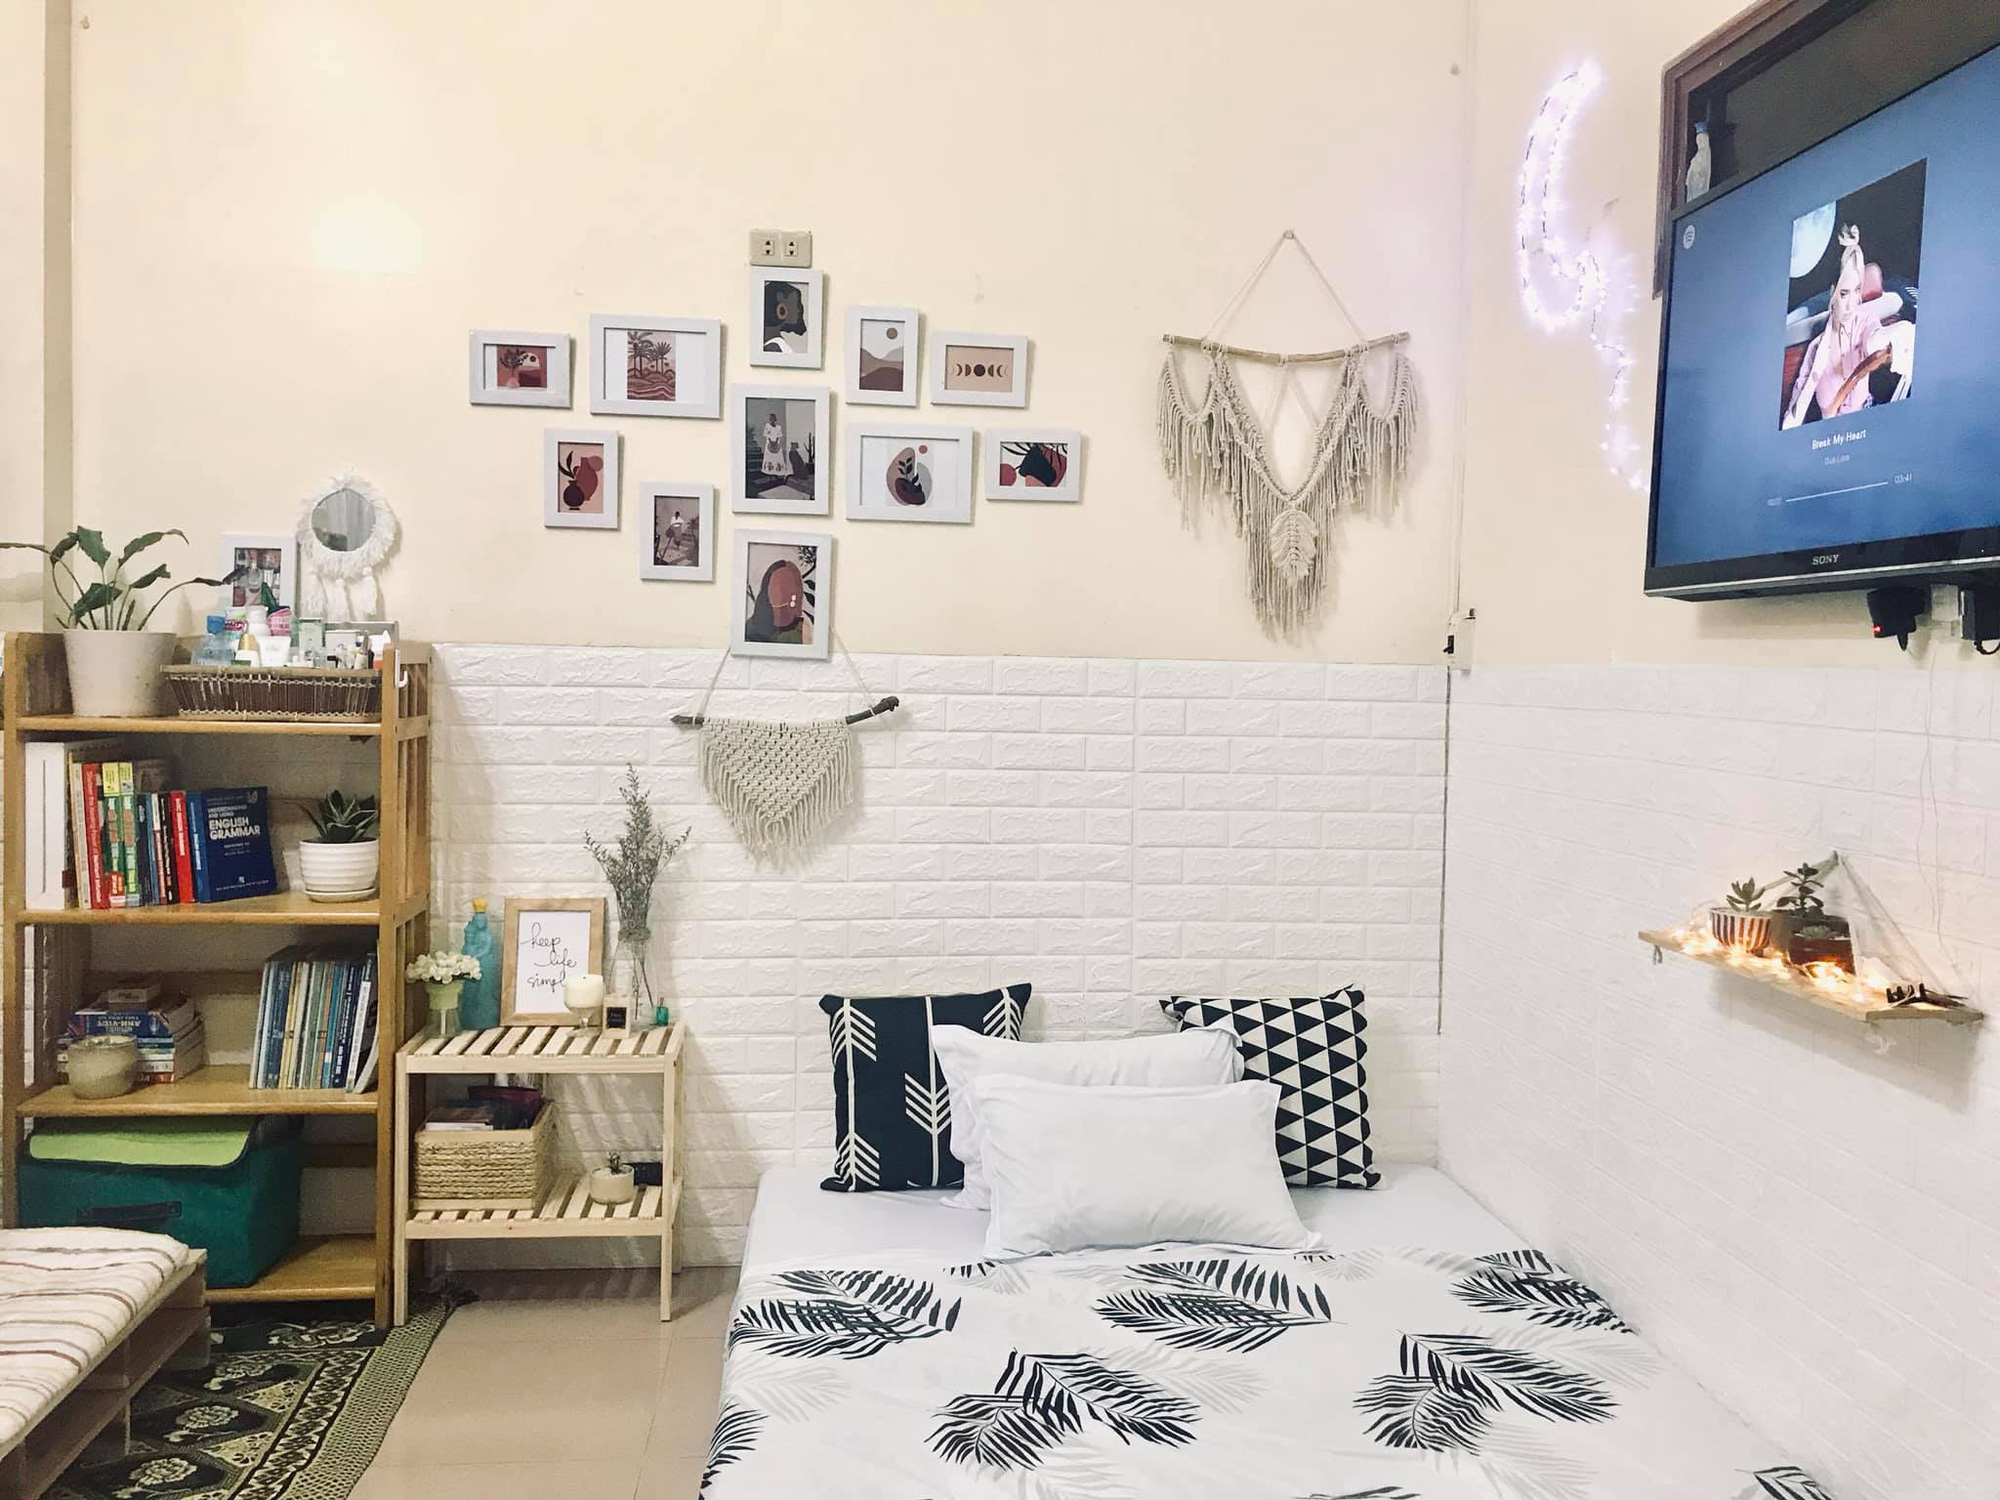 Sáng tạo và tận dụng không gian phòng ngủ của bạn để cải tạo về trang trí và không gian. Hình ảnh về cải tạo phòng ngủ sẽ giúp bạn có nhiều ý tưởng mới, đem đến một không gian nghỉ ngơi mới lạ, thoải mái và đáng yêu.